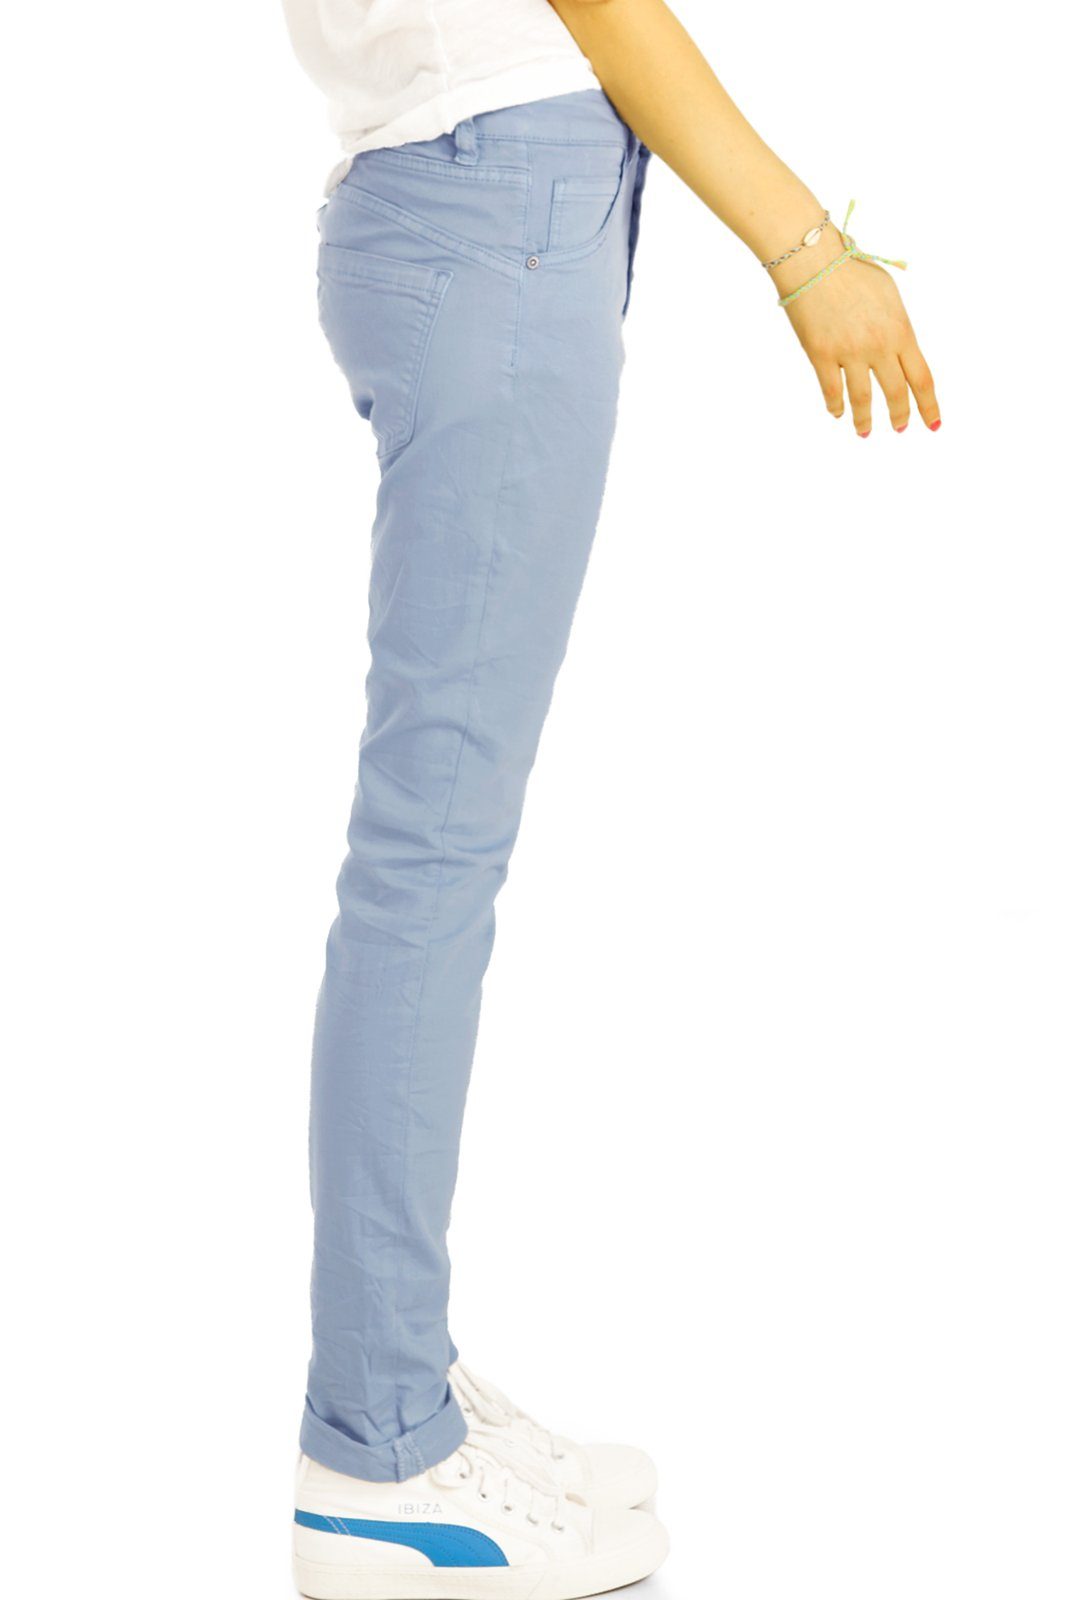 Jeans - - j30L-3 Damen Stoffhose mit vordere Hose weiß Waist be Knopfleiste Medium styled Boyfriend Knopfleiste